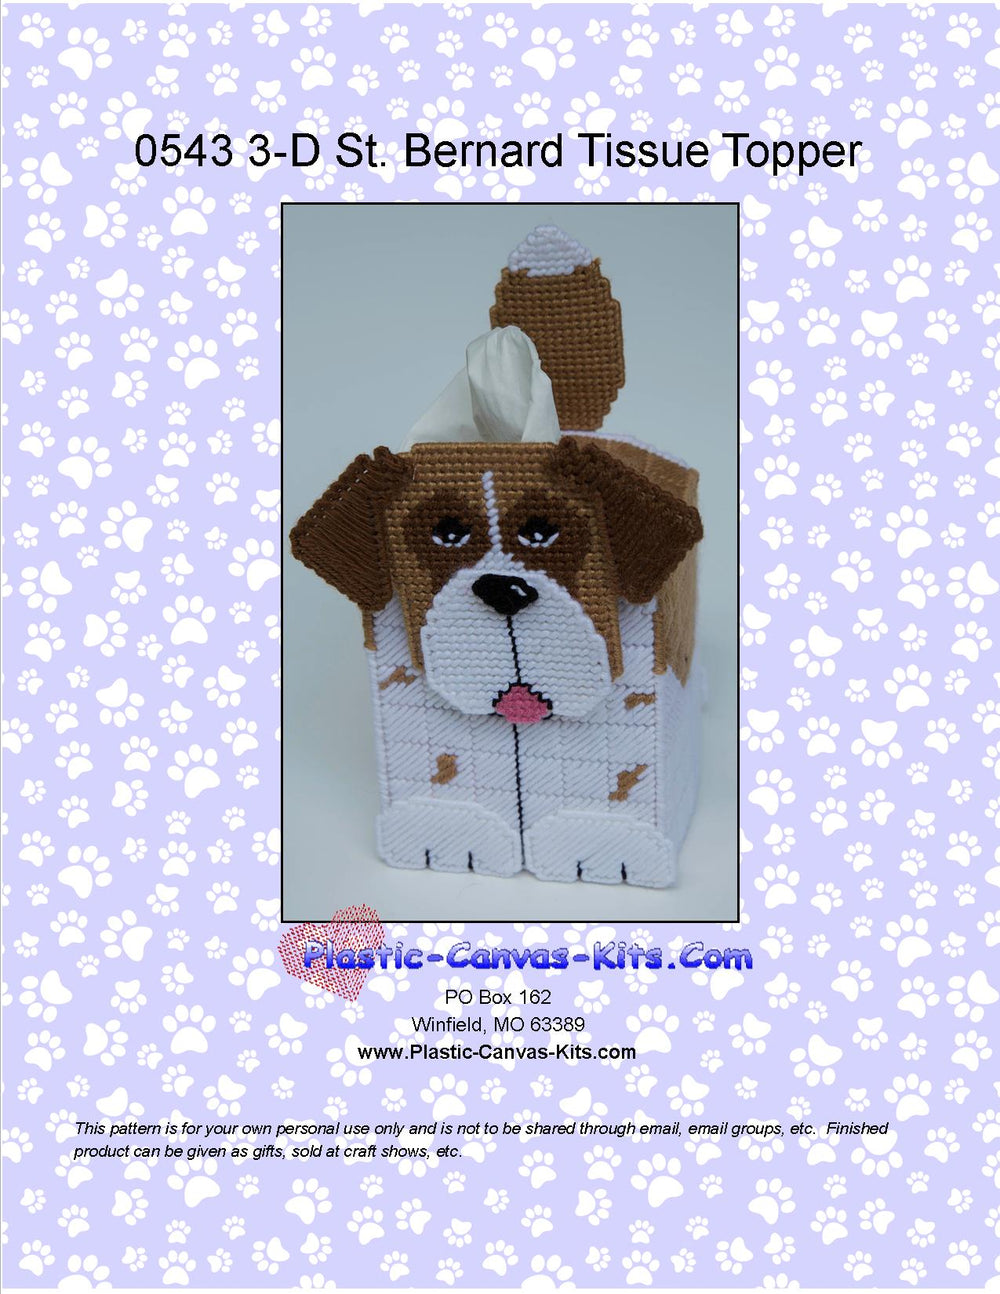 St. Bernard 3-D Tissue Topper